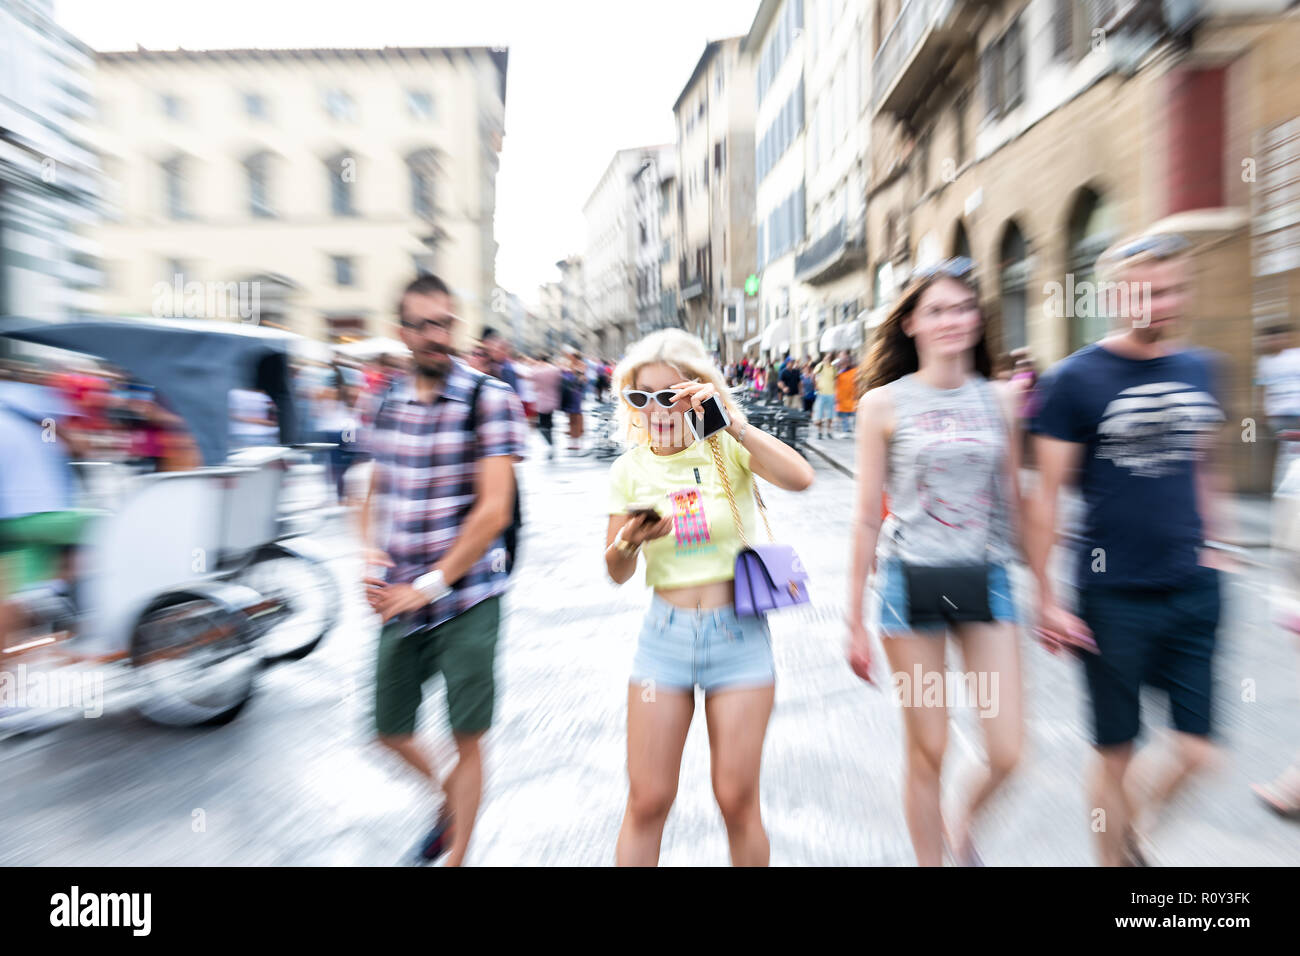 Florence, Italie - 30 août 2018 : Zoom Zoom rafale, en effet sur la foule, les gens, les touristes, blond woman, looking at phone, smartphone, maintenez Banque D'Images